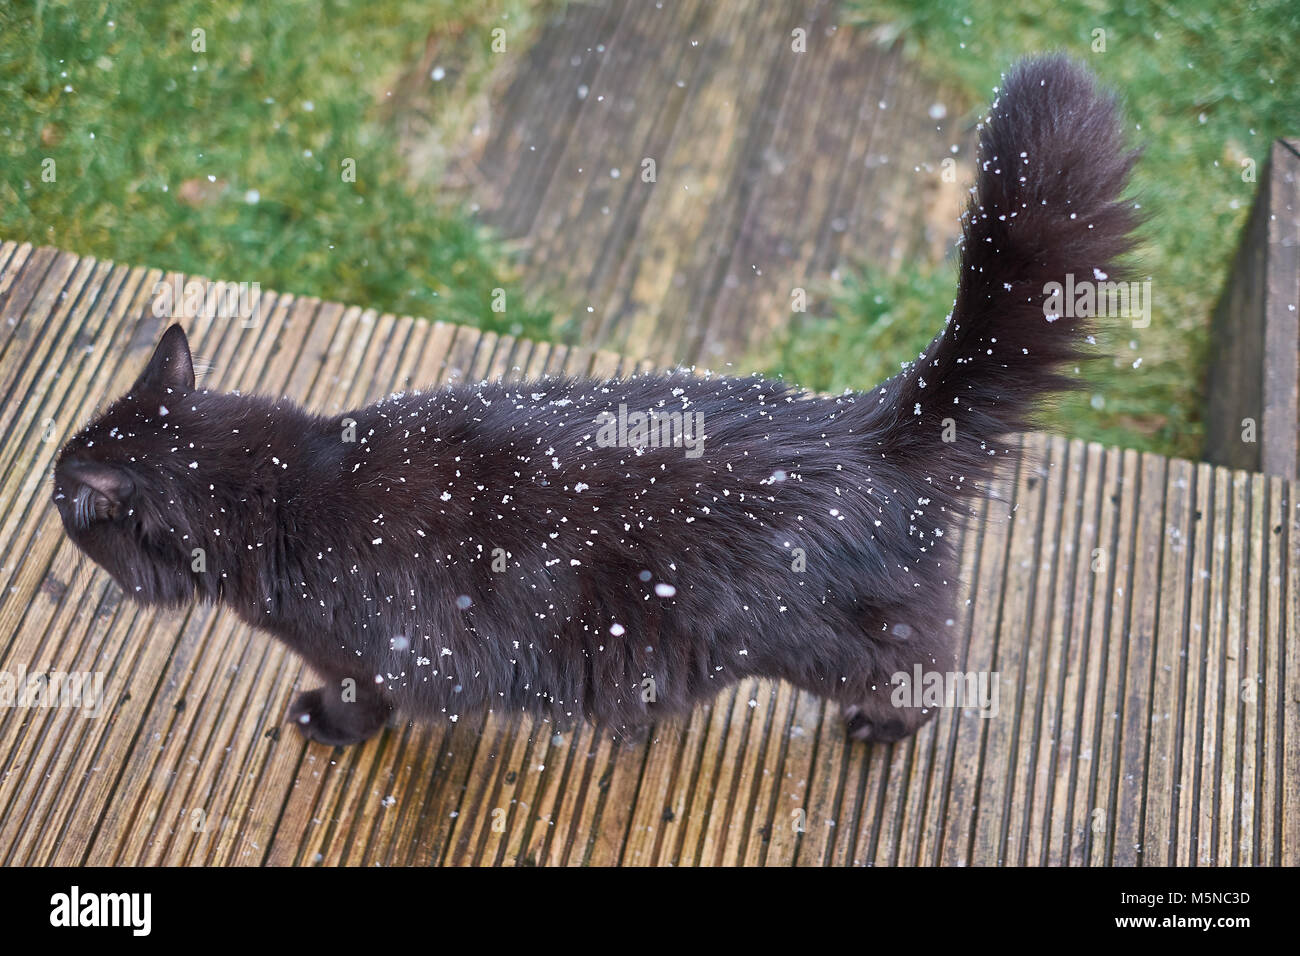 Black Cat walking dans jardin avec la neige qui tombe autour, montrant au large manteau noir. Le début d'une chute de neige, avec des flocons de lumière par les chats fourrure noire Banque D'Images